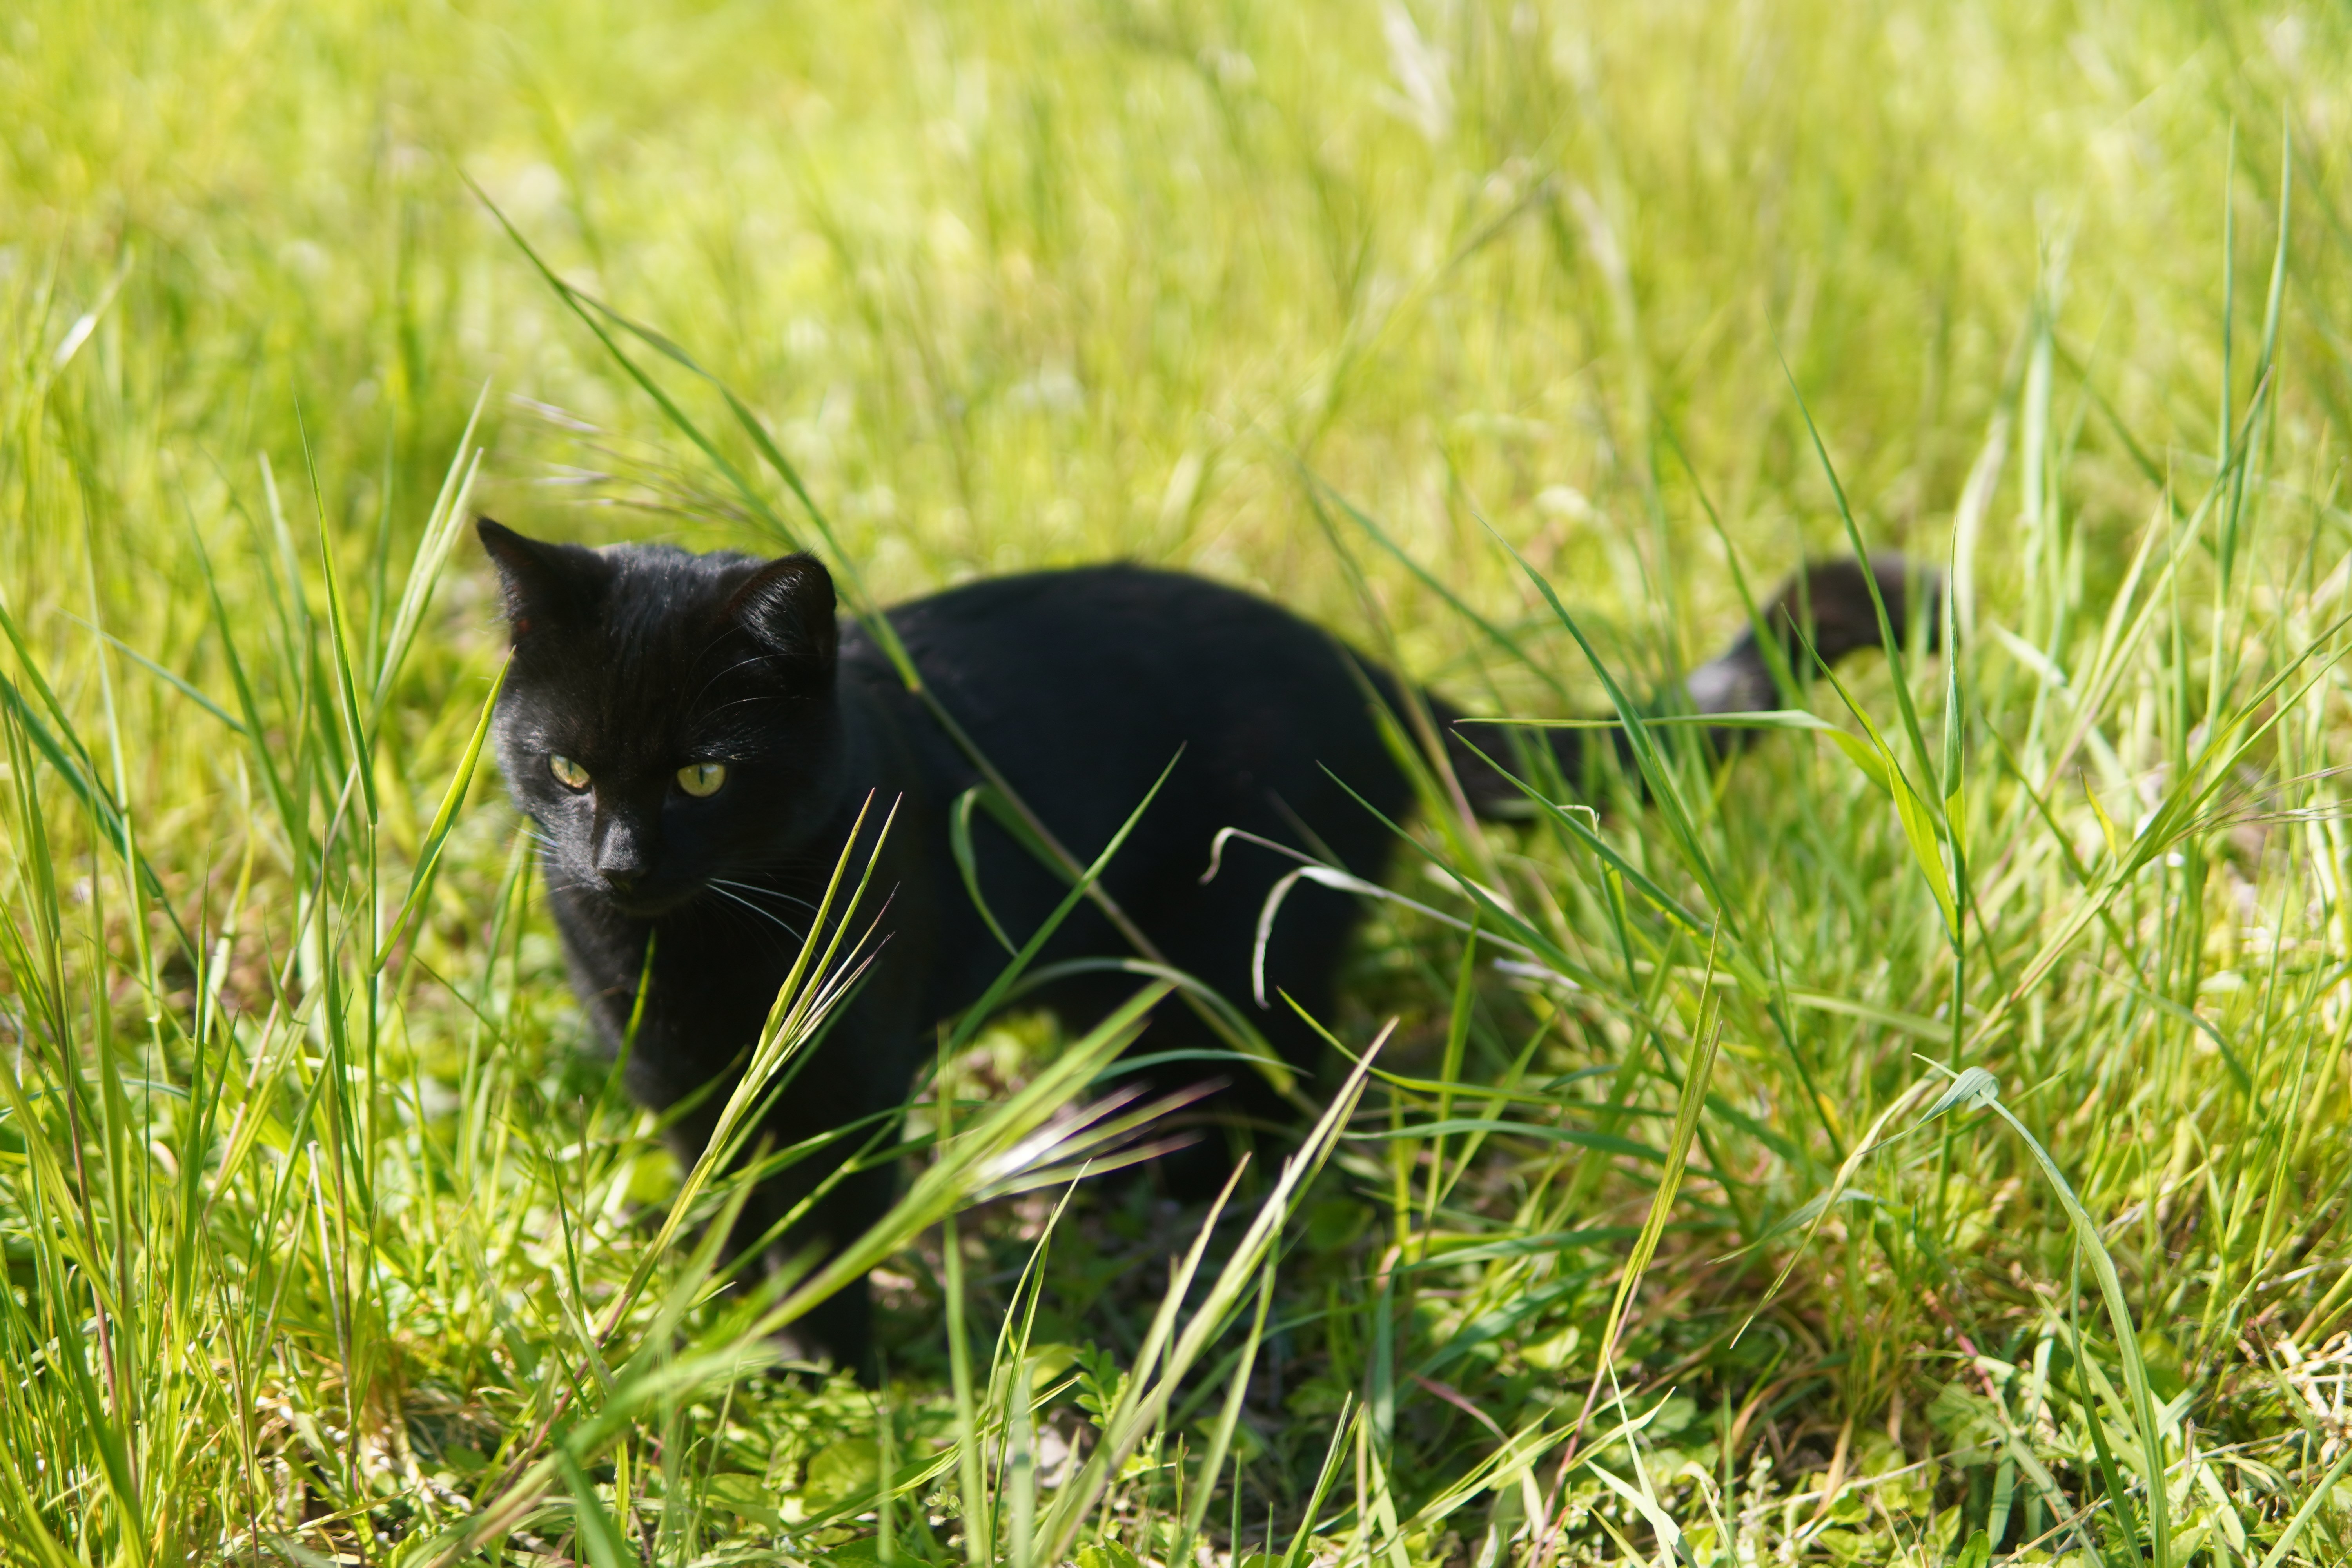 General 6000x4000 grass black cats cats feline black closeup outdoors